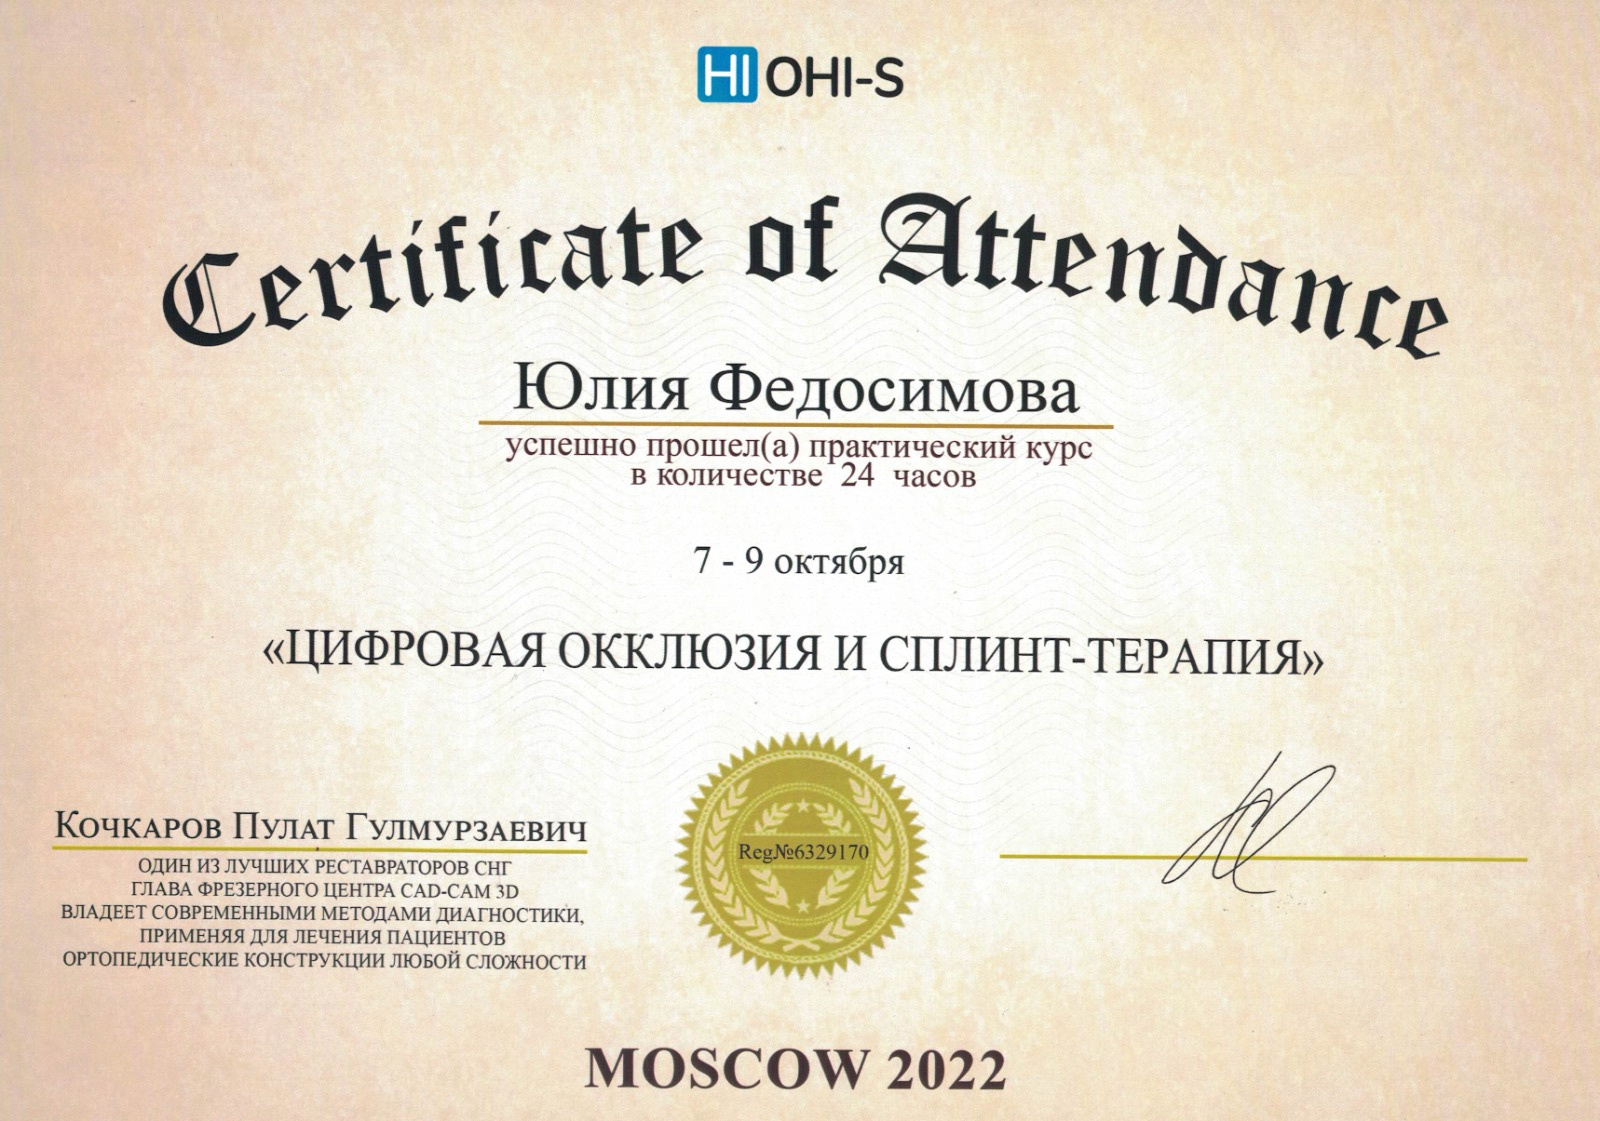 Сертификат о прохождении практического курса "Цифровая окклюзия и сплинт-терапия" Октябрь 2023г